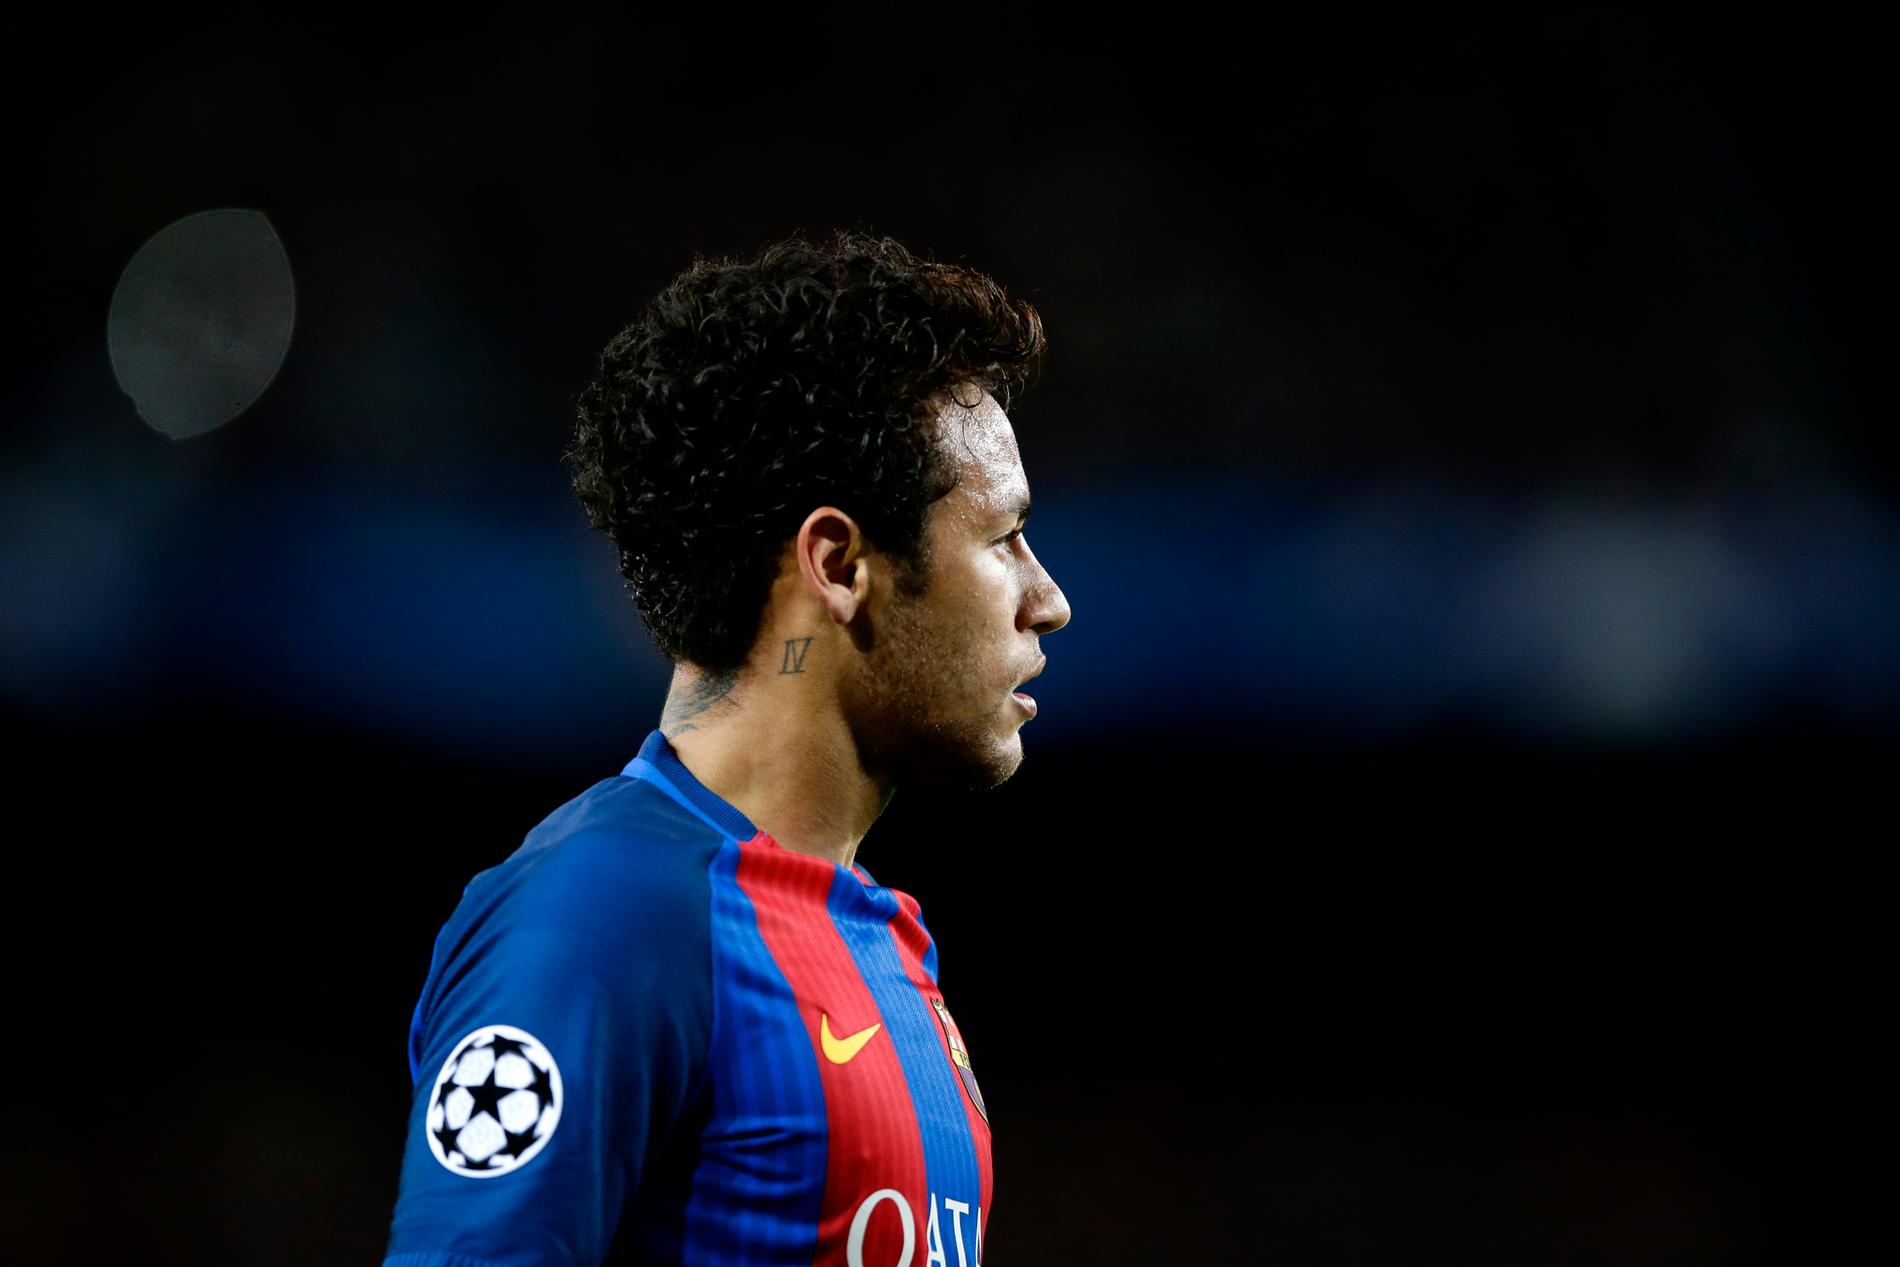 Barcelonas brasilianska stjärna Neymar misstänks för bedrägeri och korrpution. Arkivbild.